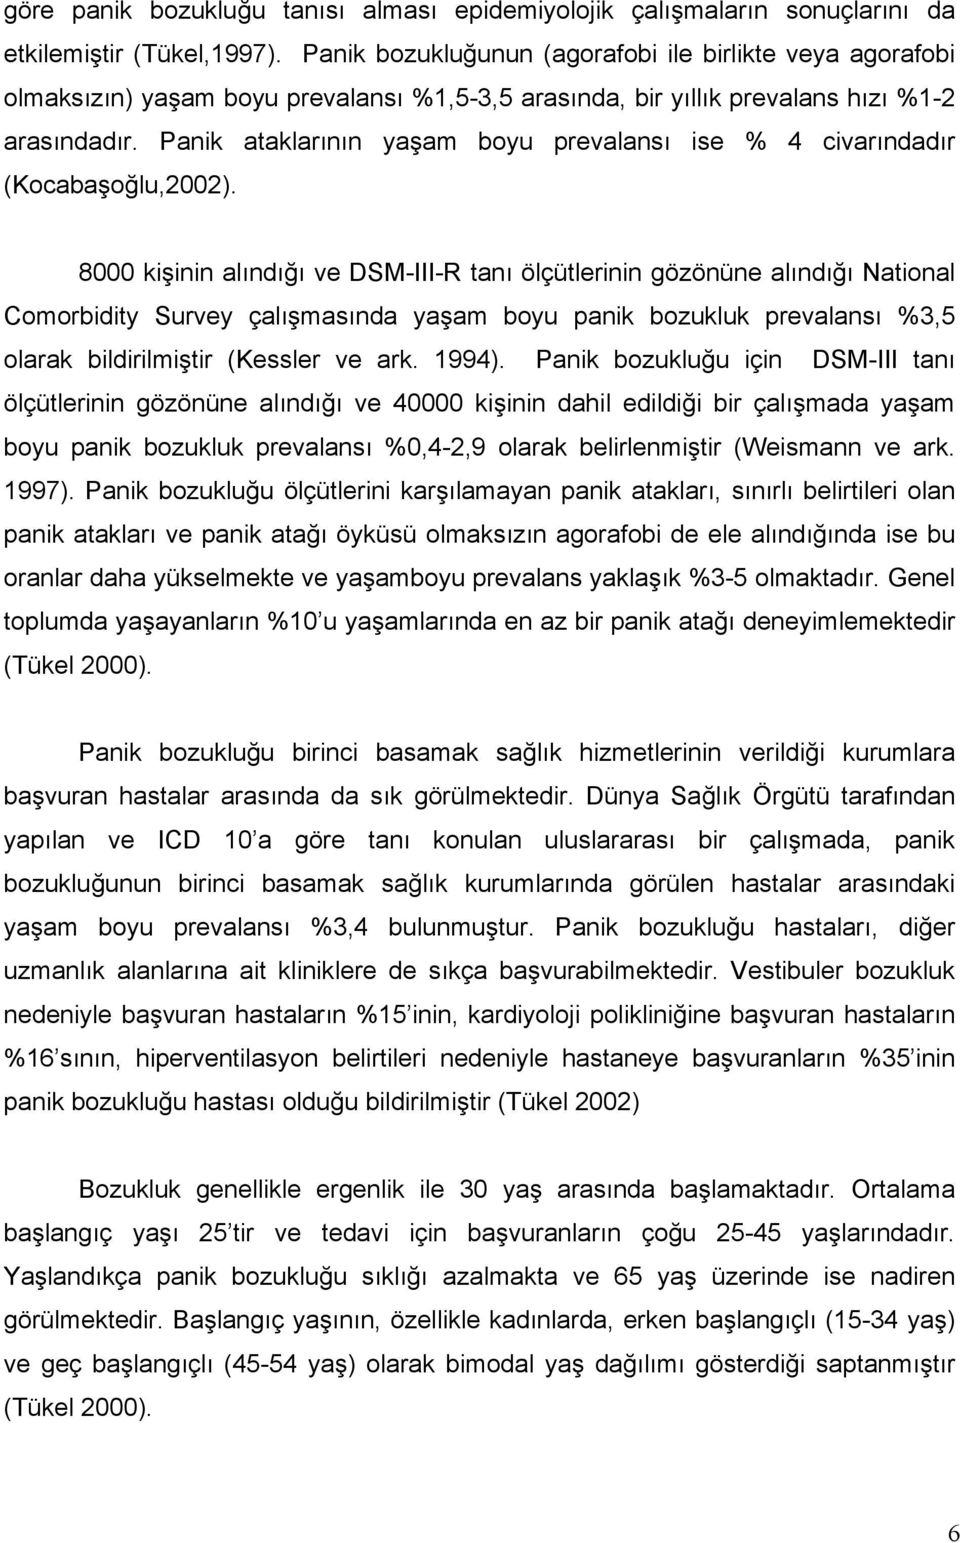 Panik ataklarının yaşam boyu prevalansı ise % 4 civarındadır (Kocabaşoğlu,2002).